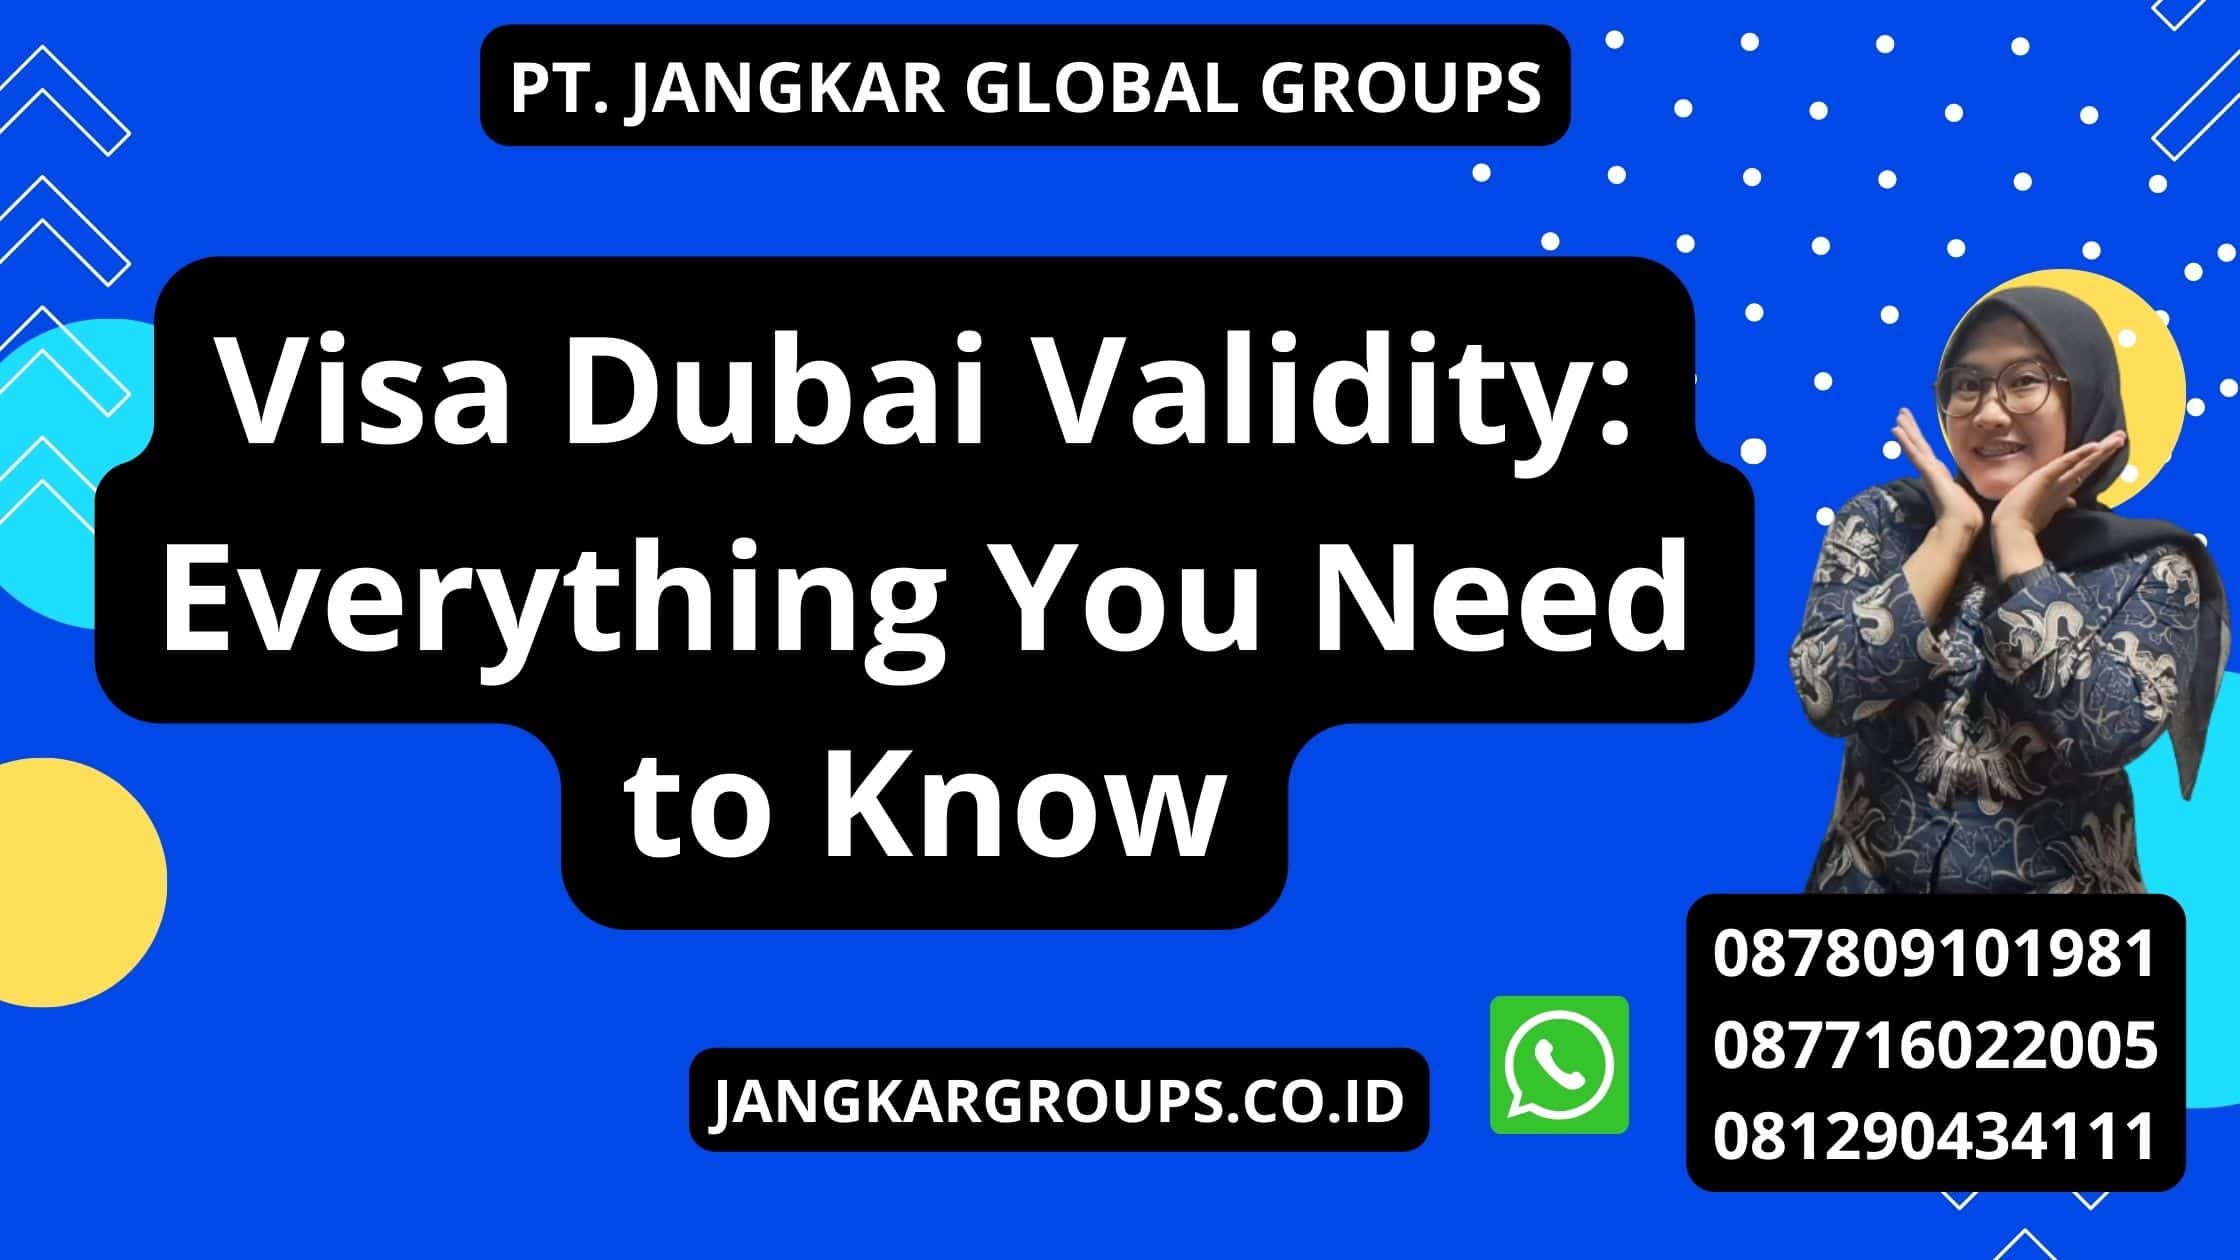 Visa Dubai Validity: Everything You Need to Know